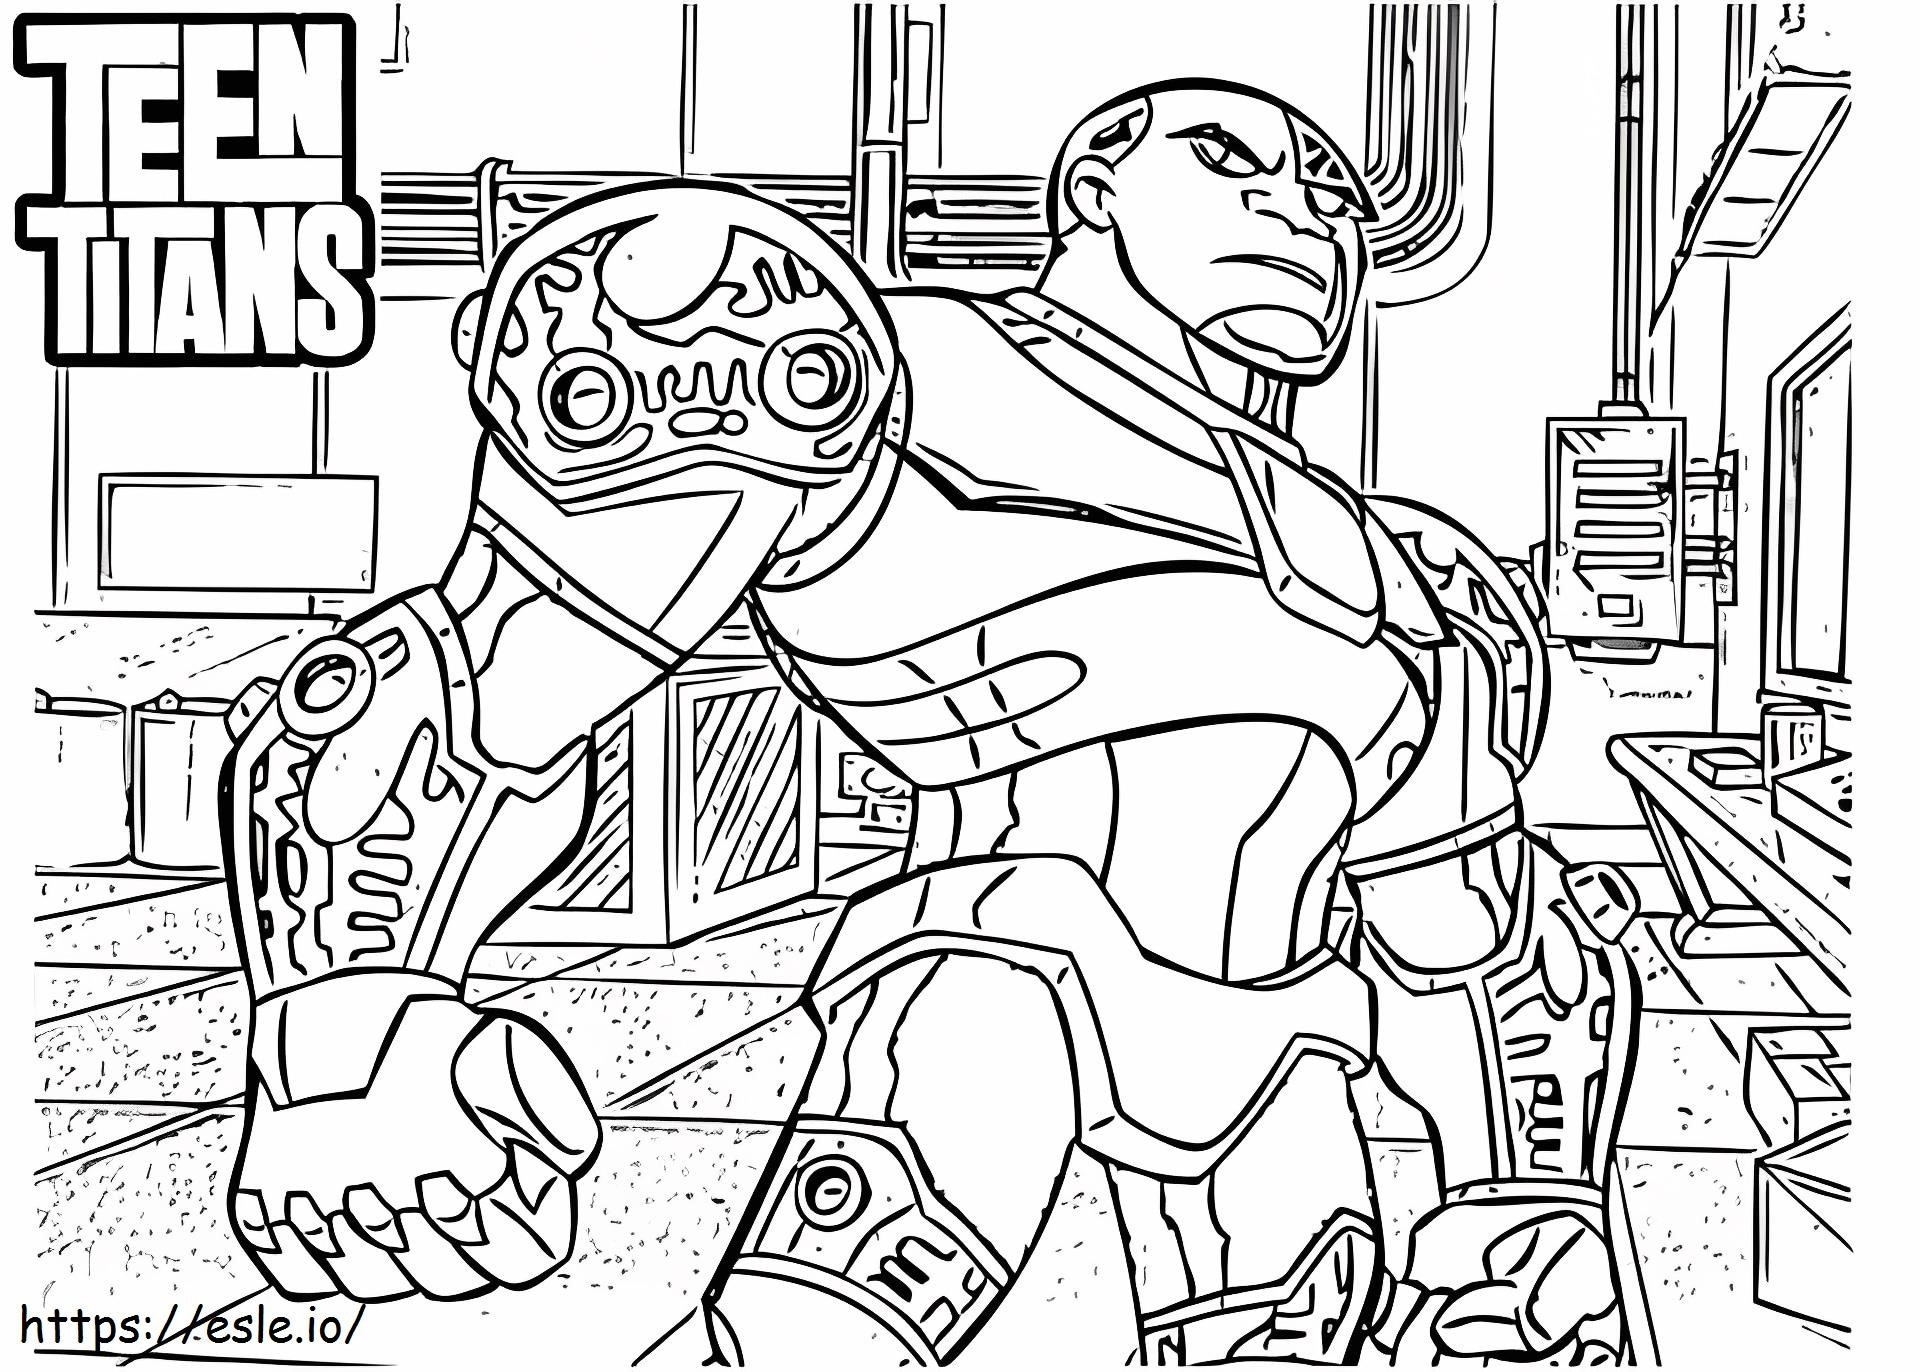 Cyborg dei Teen Titans da colorare